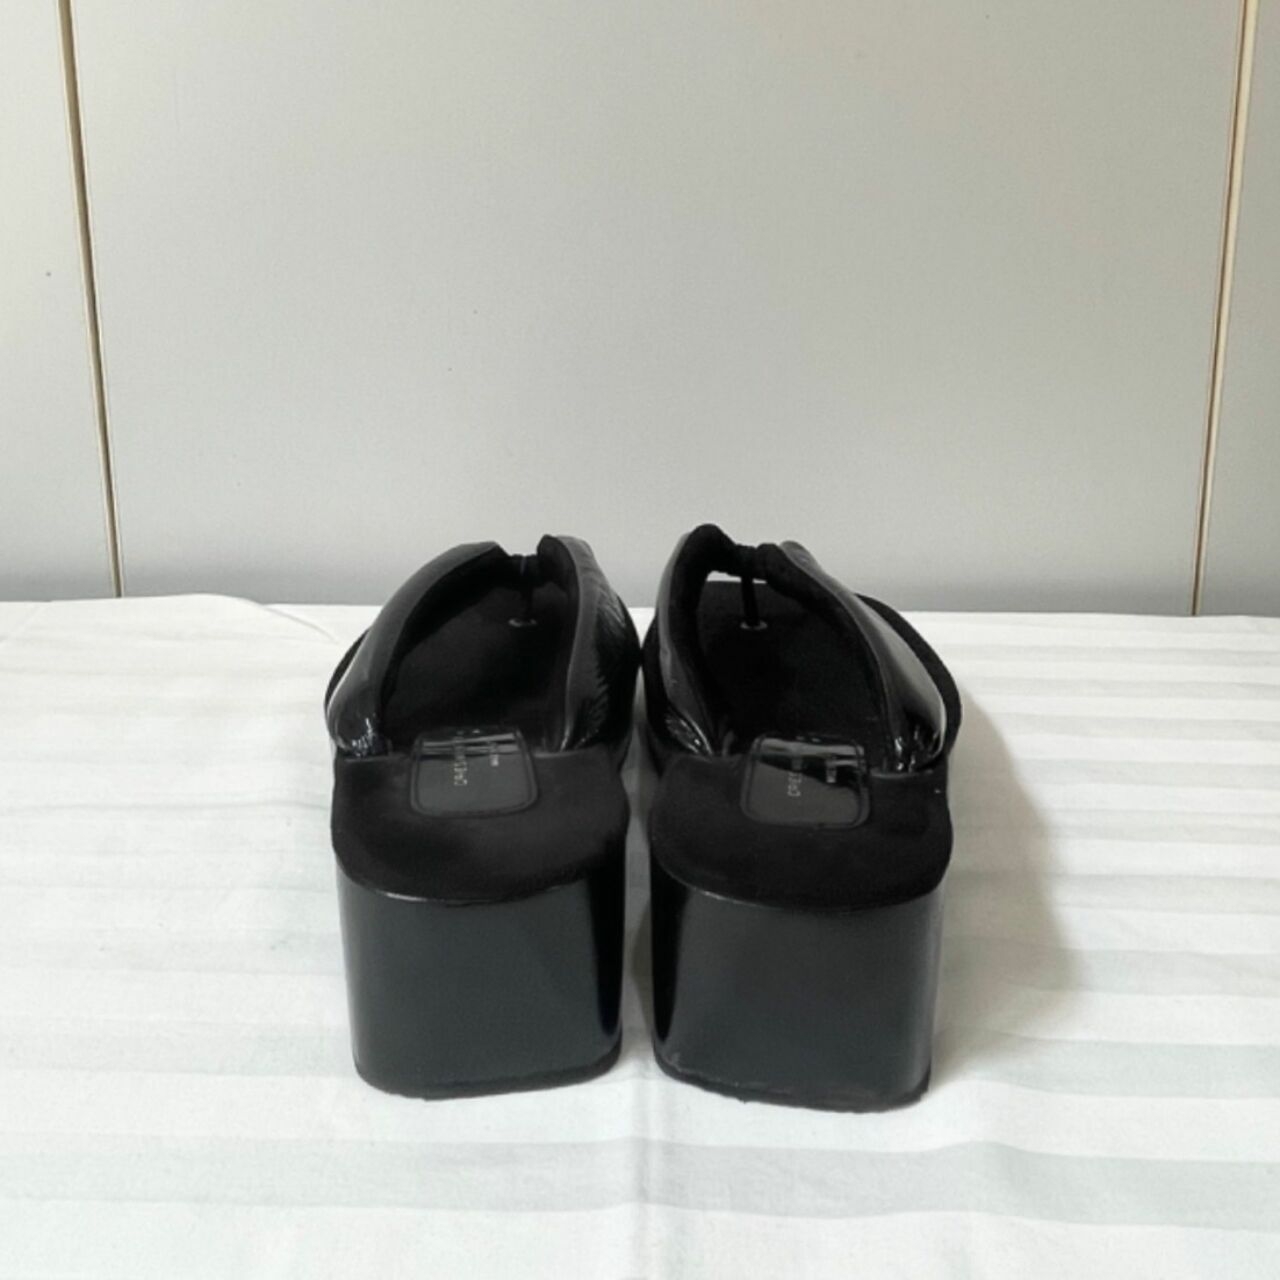 Dries Van Noten Black Sandals